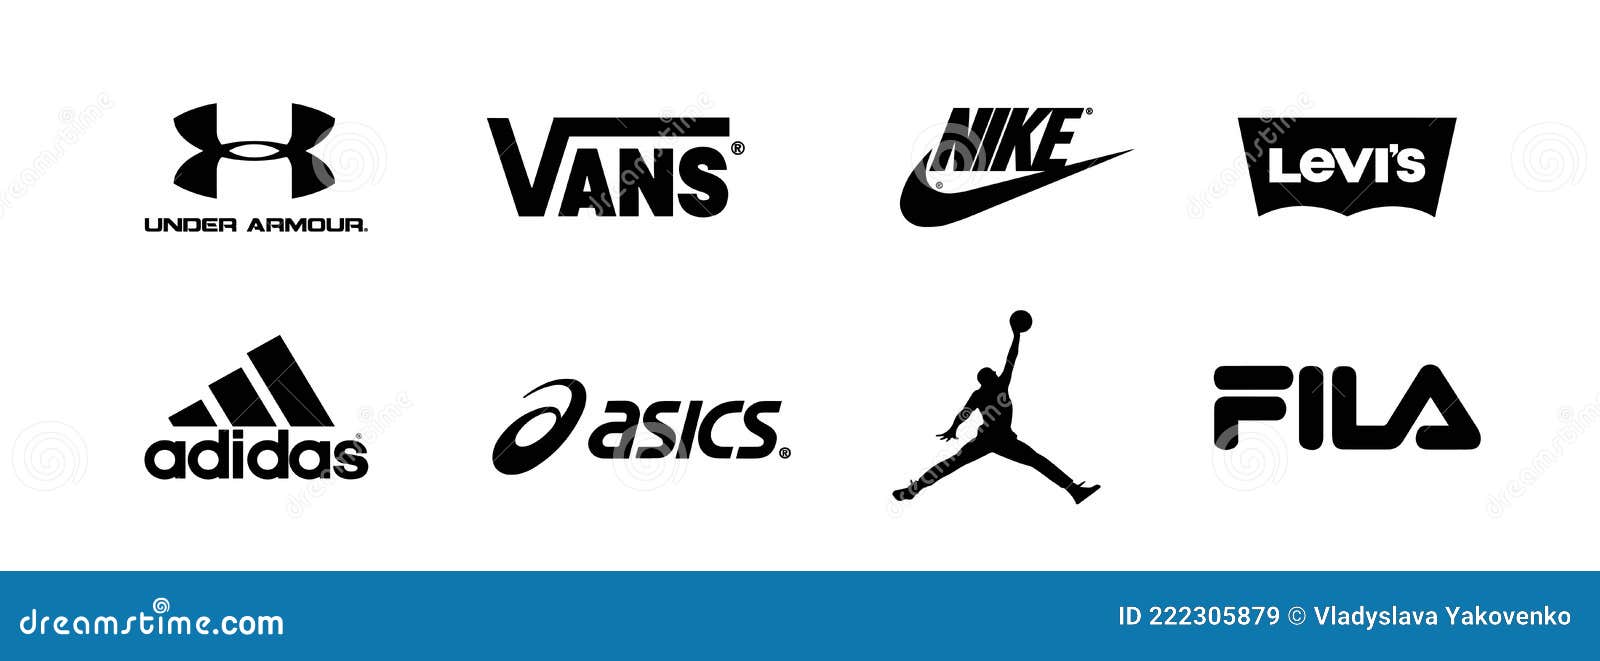 Marcas Ropa Del Logotipo Vector De Colección Adidas Under Armor Jordan Asics Nike Vans Levis Fila. Zaporizhzhia Imagen de archivo editorial - Ilustración de insignias, kappa: 222305879